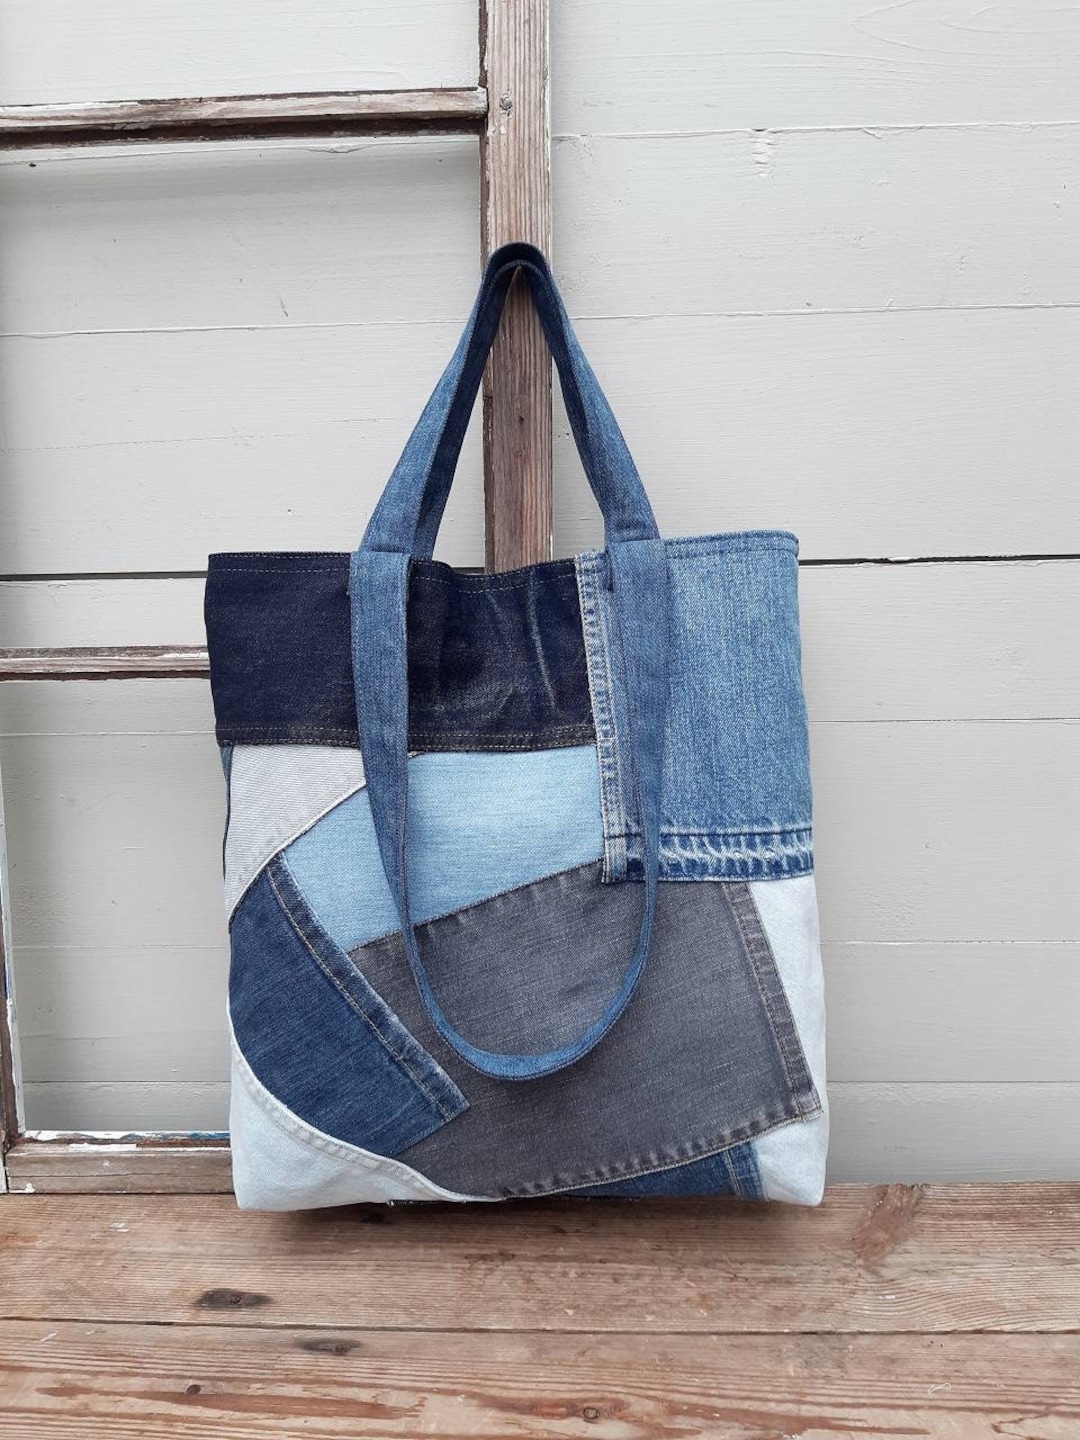 Patchwork Bag Upcycled Denim Jeans Bag - Etsy